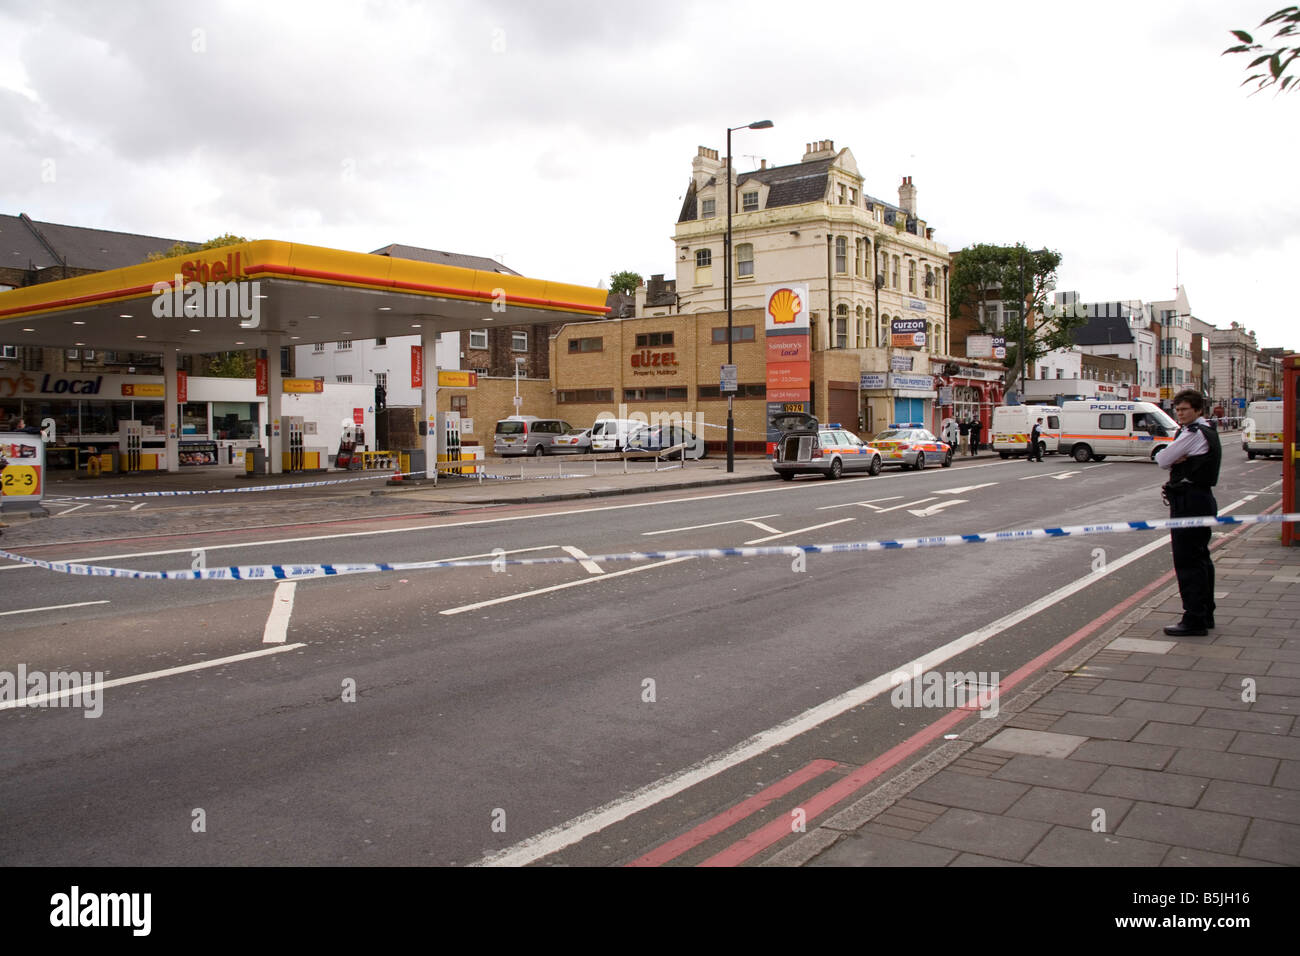 Gasolinera Shell Holloway Road acordonada durante la operación policial Foto de stock